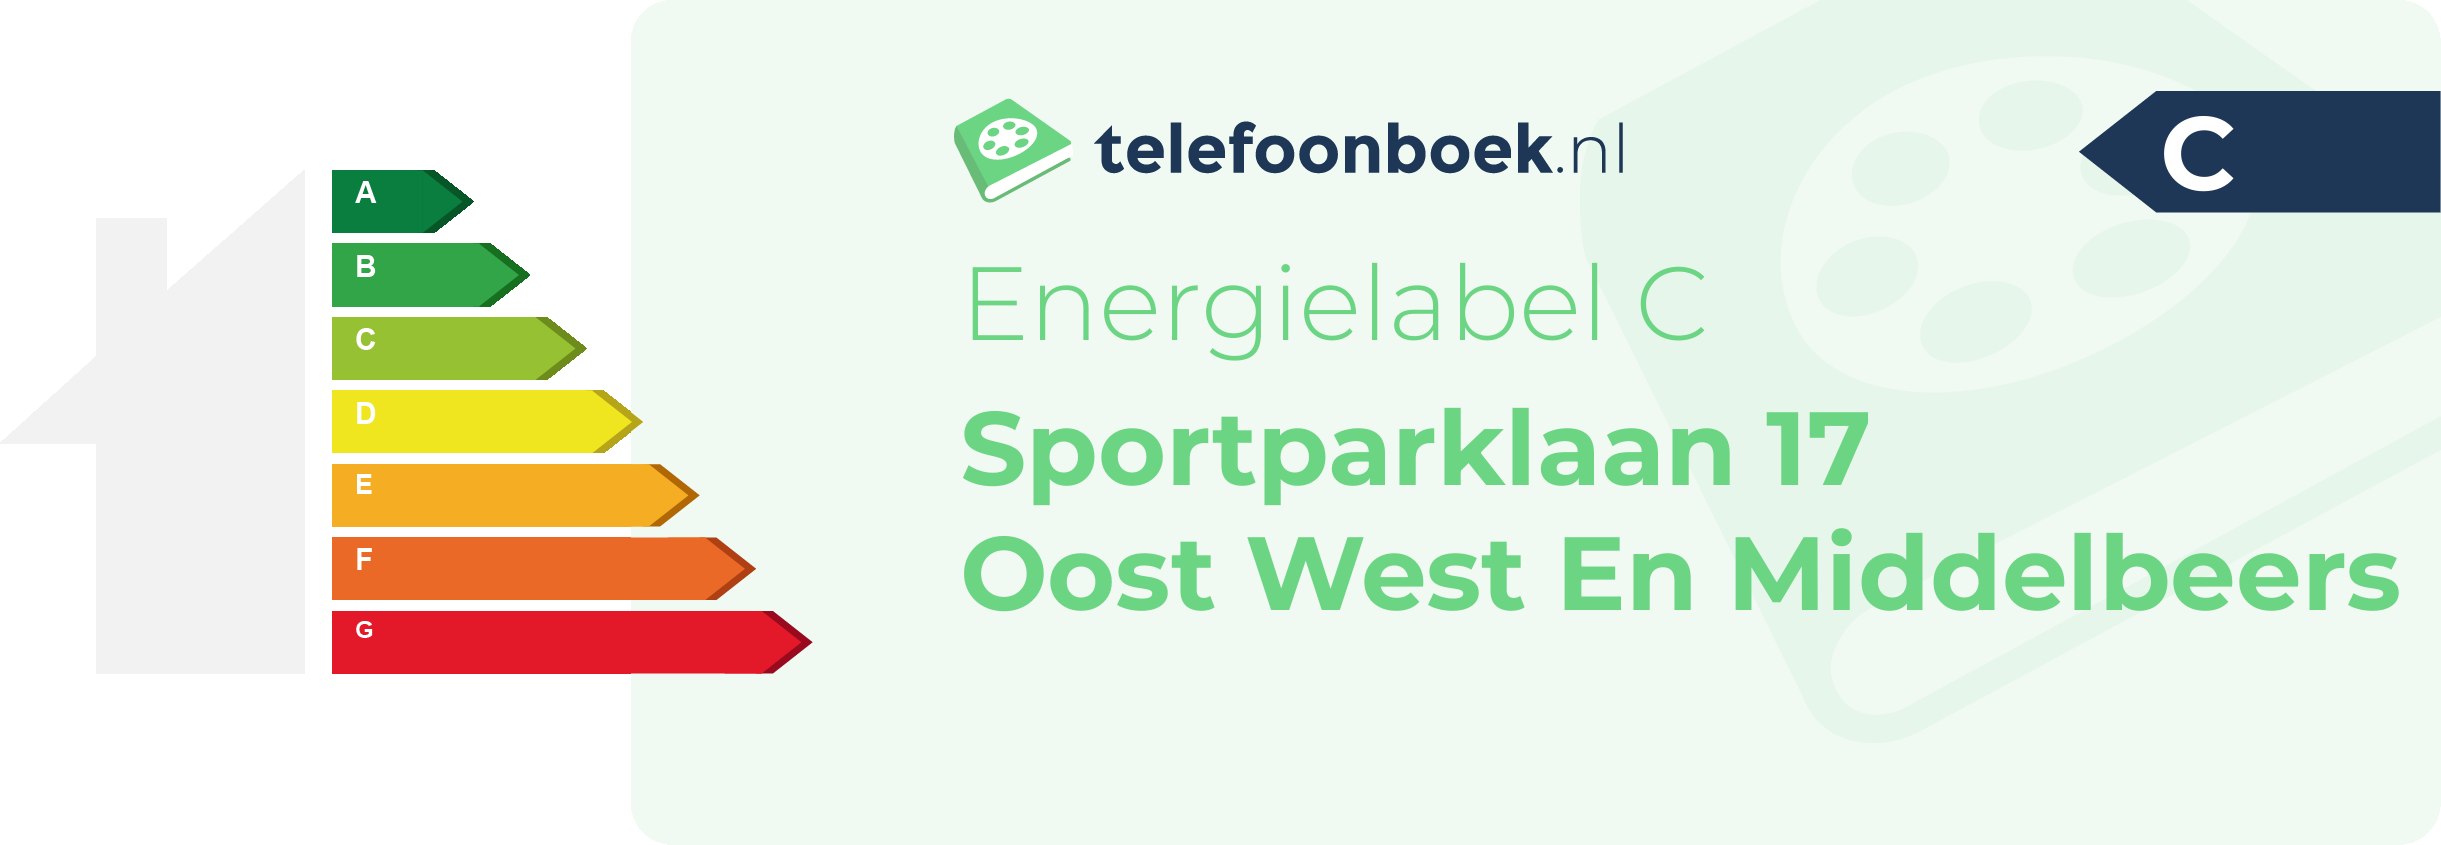 Energielabel Sportparklaan 17 Oost West En Middelbeers